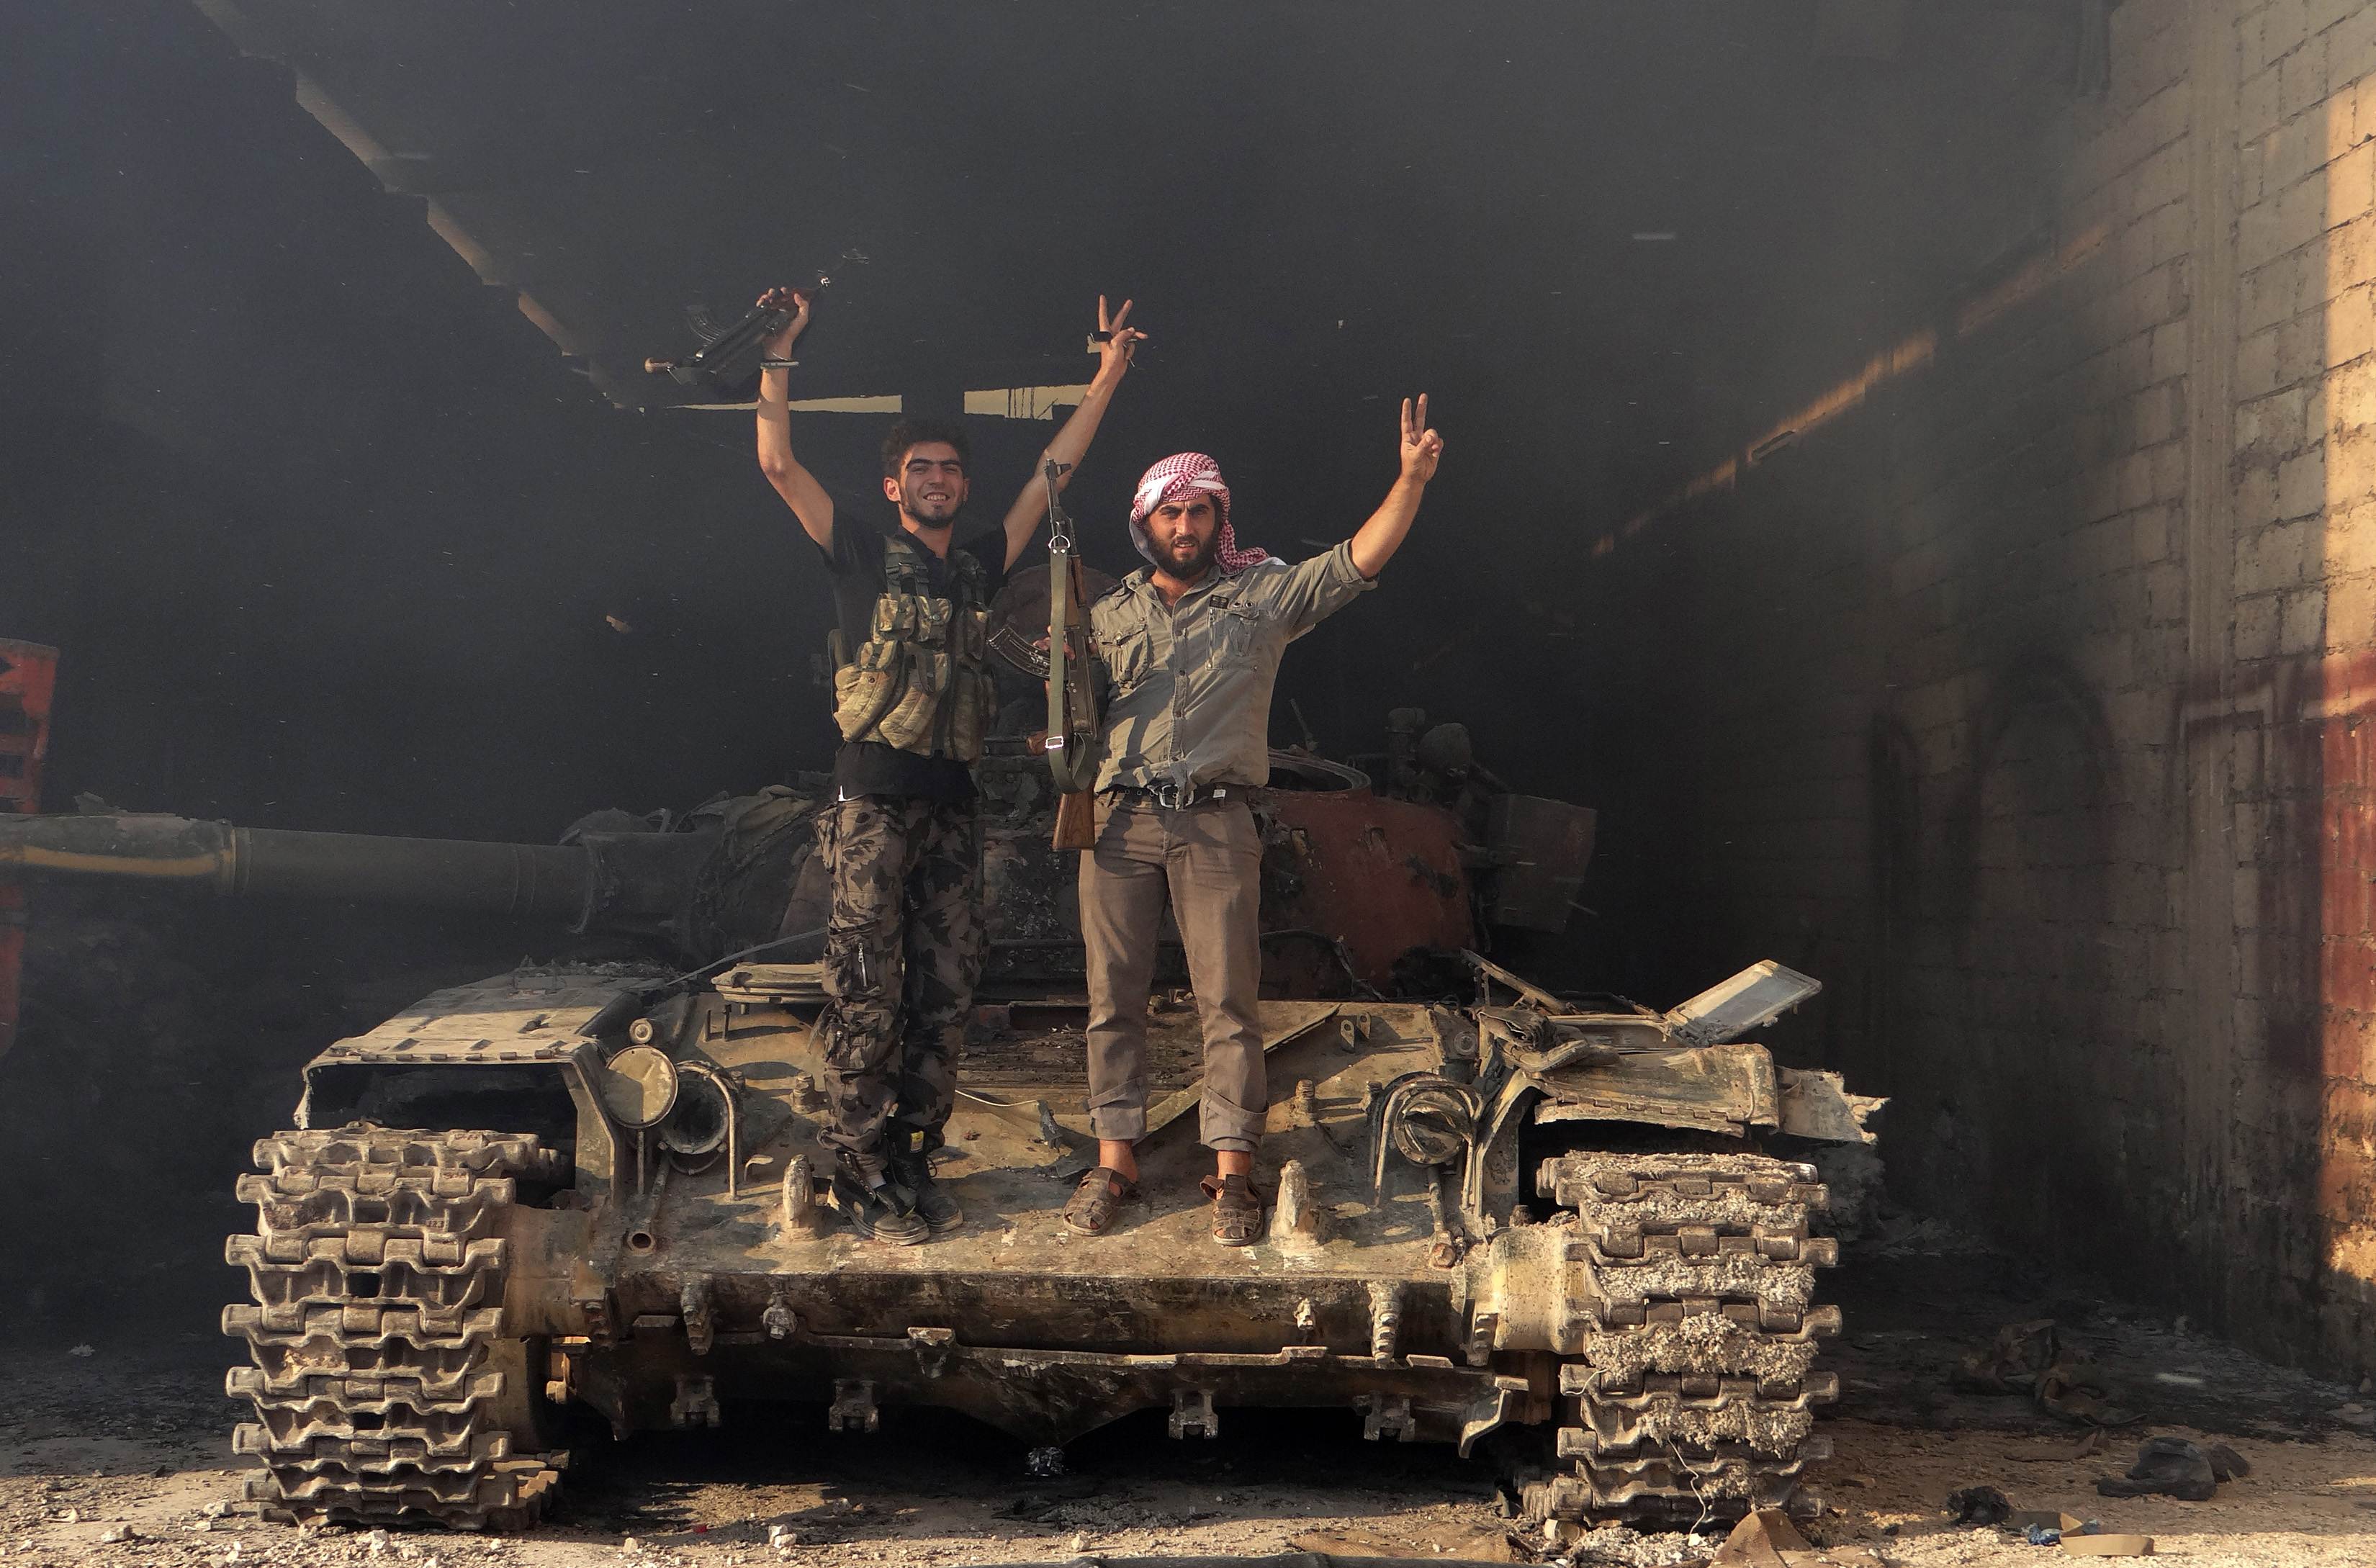 أخبار سوريا _ المجاهدون يقتلون أكثر من 150 عنصراً من قوات أسد في إدلب وحلب ودرعا ويدمرون 11 آلية عسكرية_(20-4-2015)